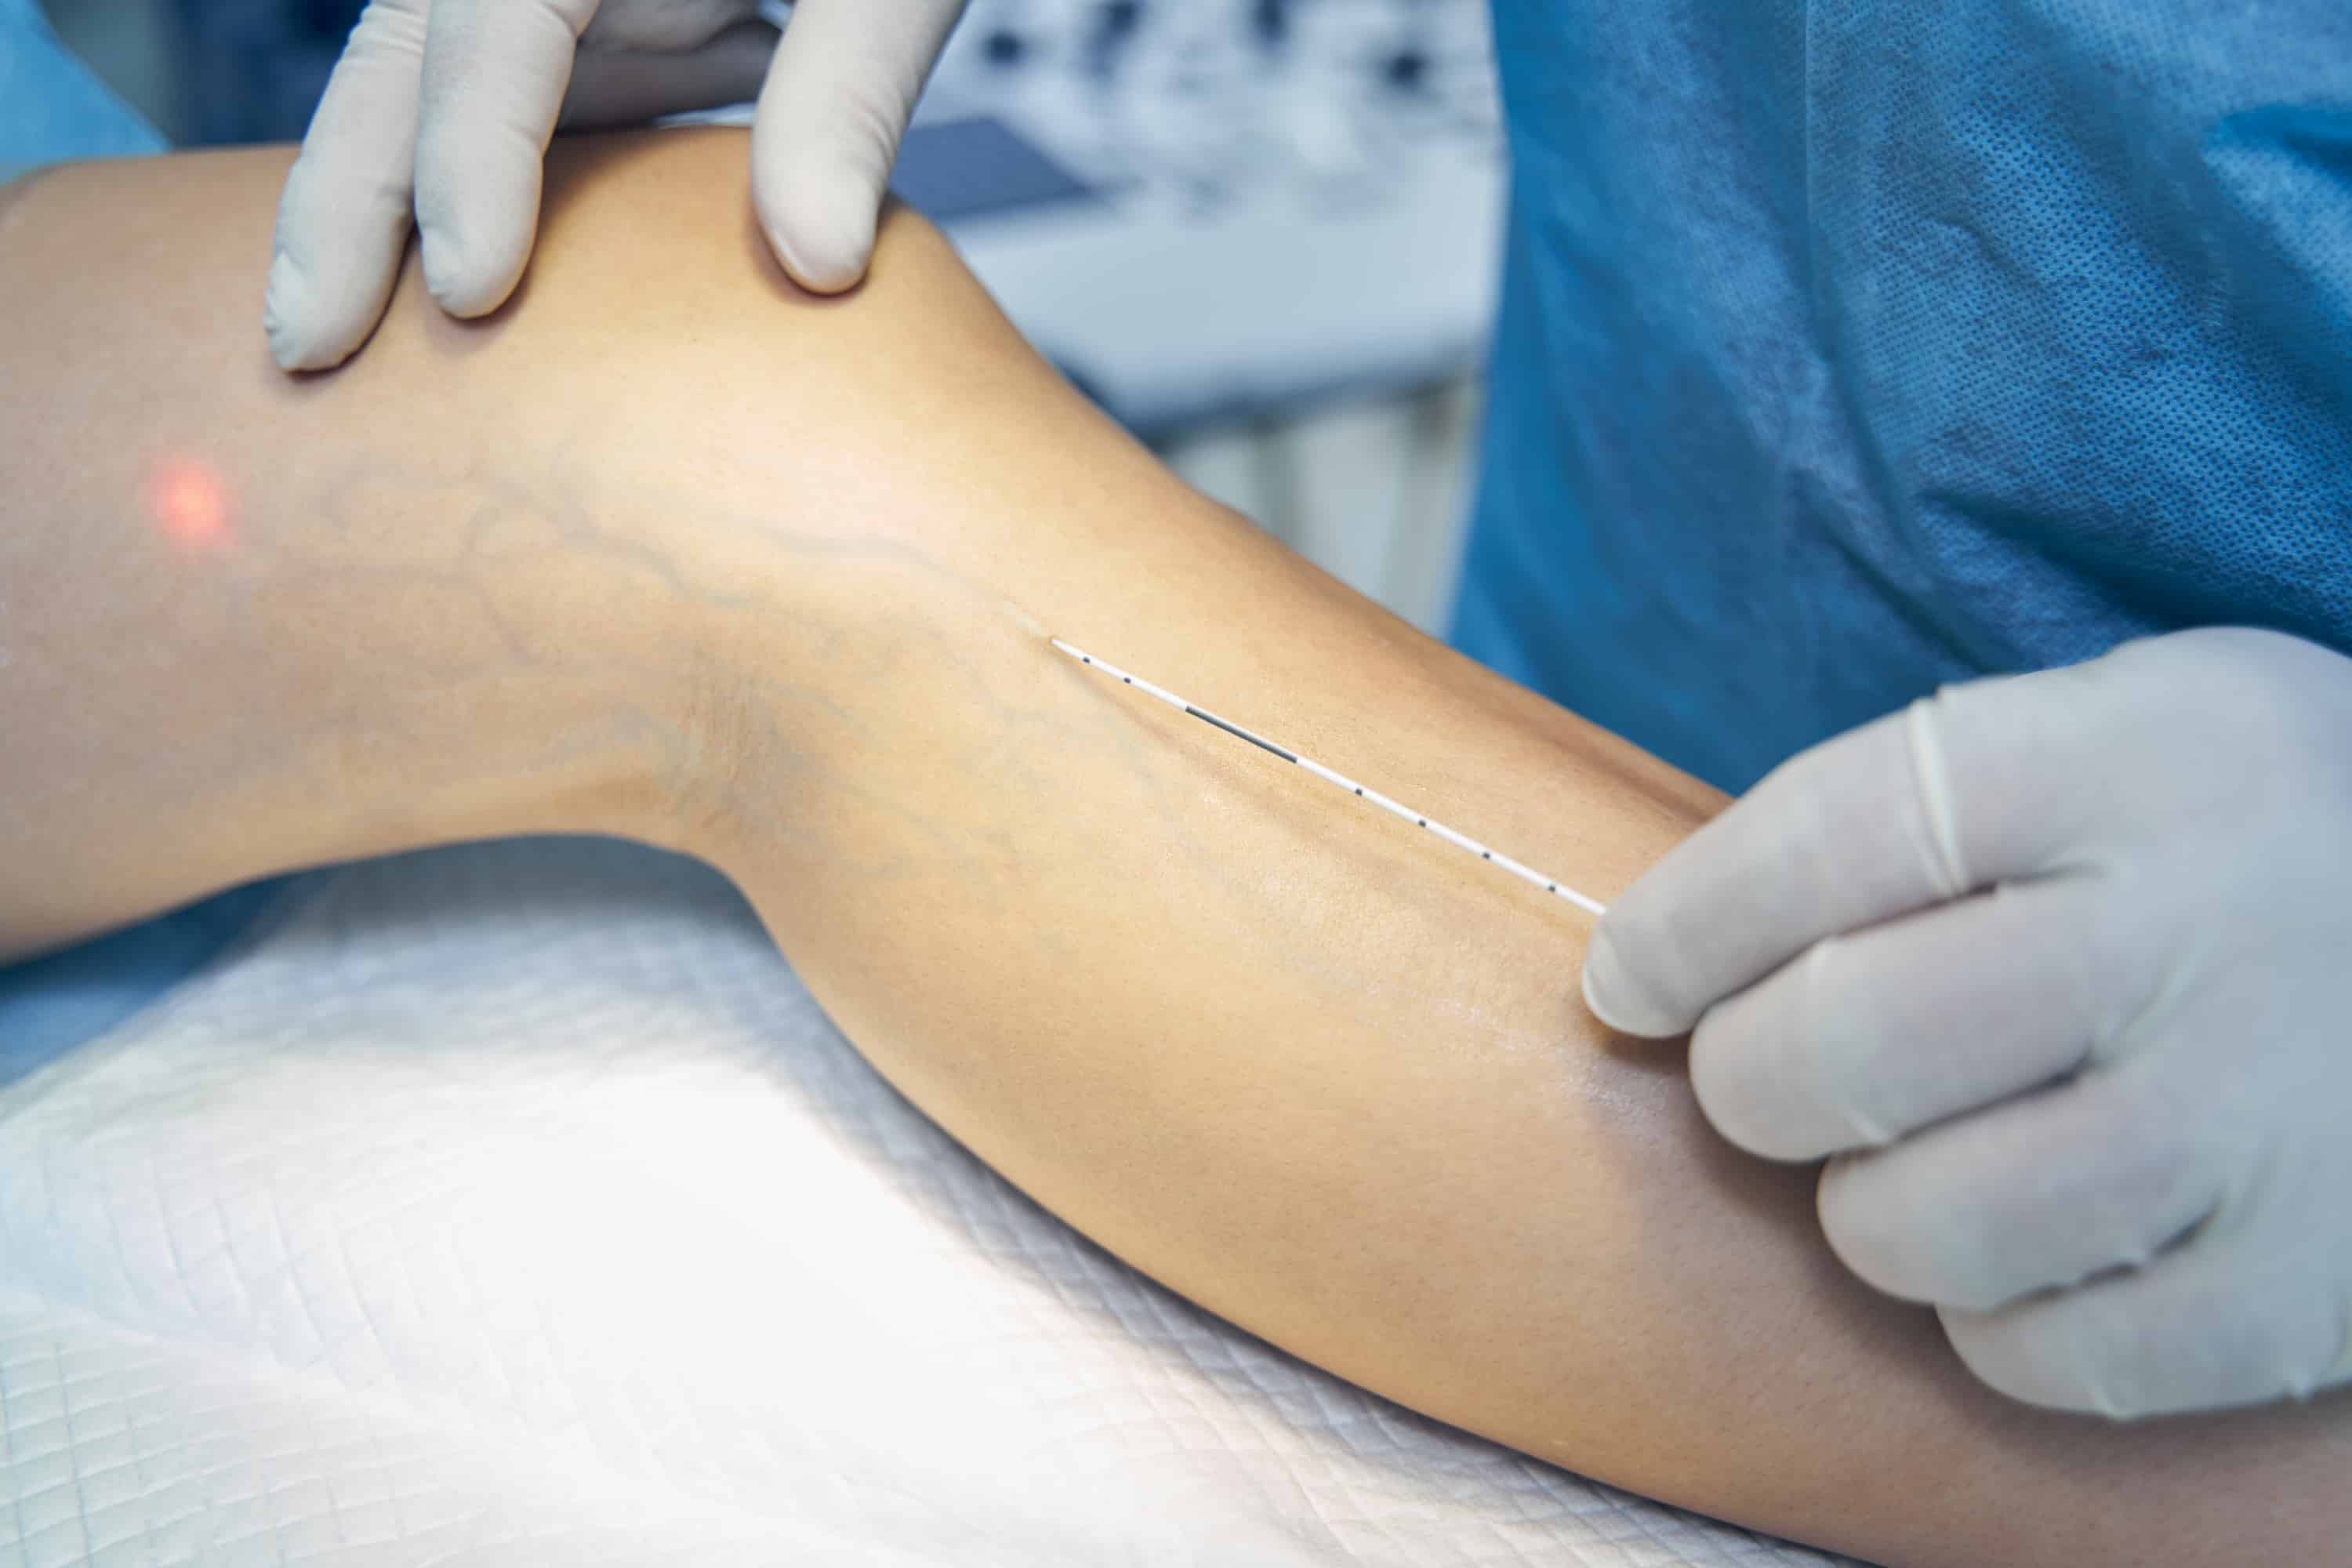 Turkiye varicose vein removal surgery